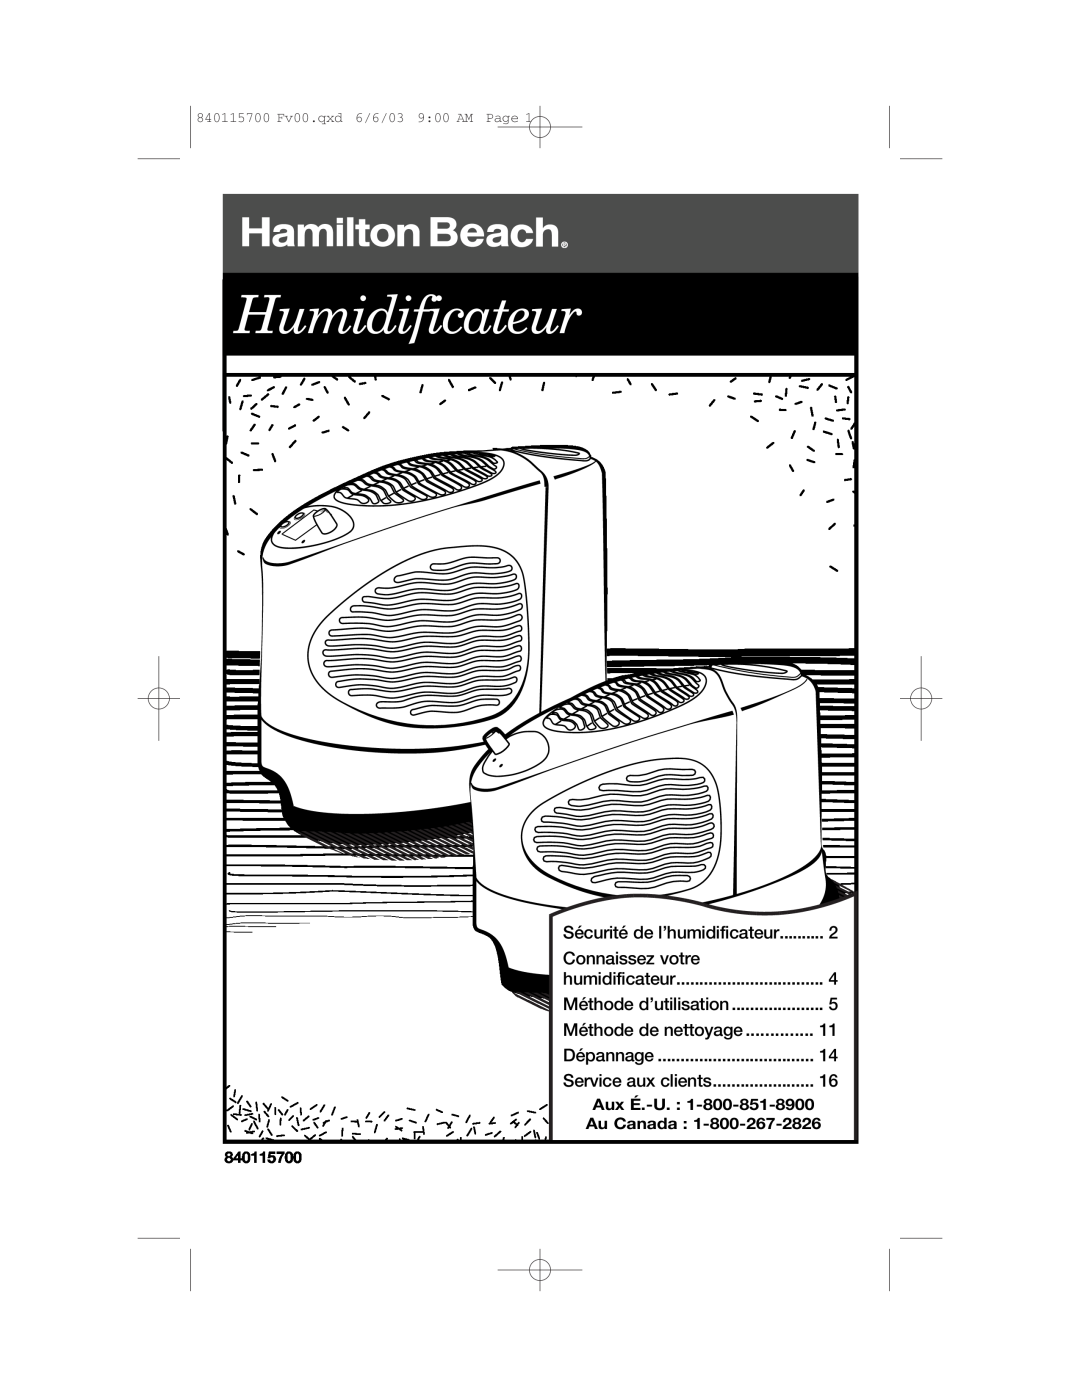 Hamilton Beach 05521 Sécurité de l’humidificateur, Connaissez votre, Méthode de nettoyage, Humidificateur, Dépannage, Page 